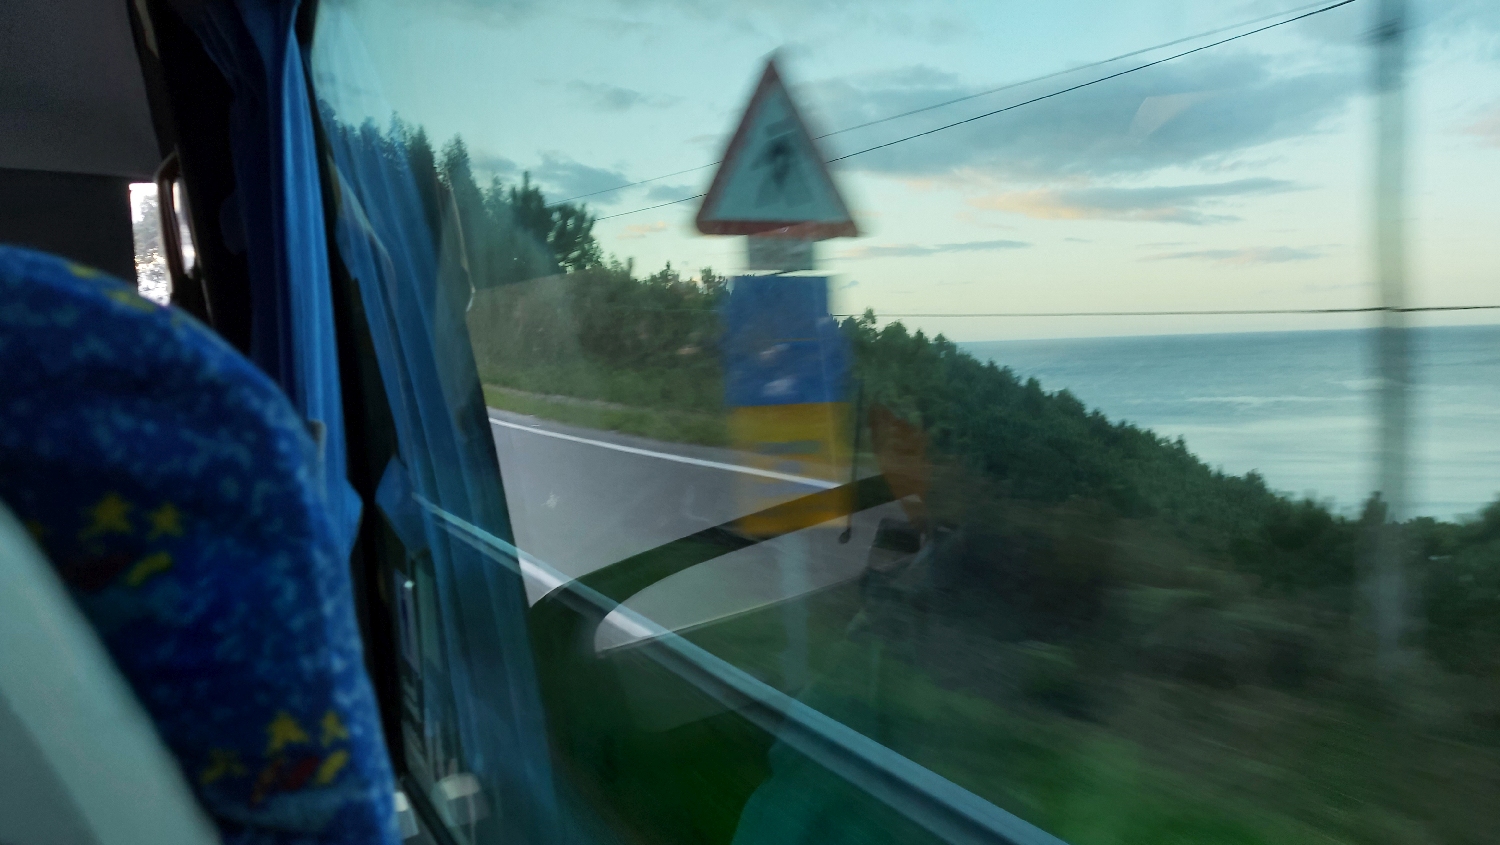 El Camino, Francia út, Caminós jelzőtábla a buszról fotózva